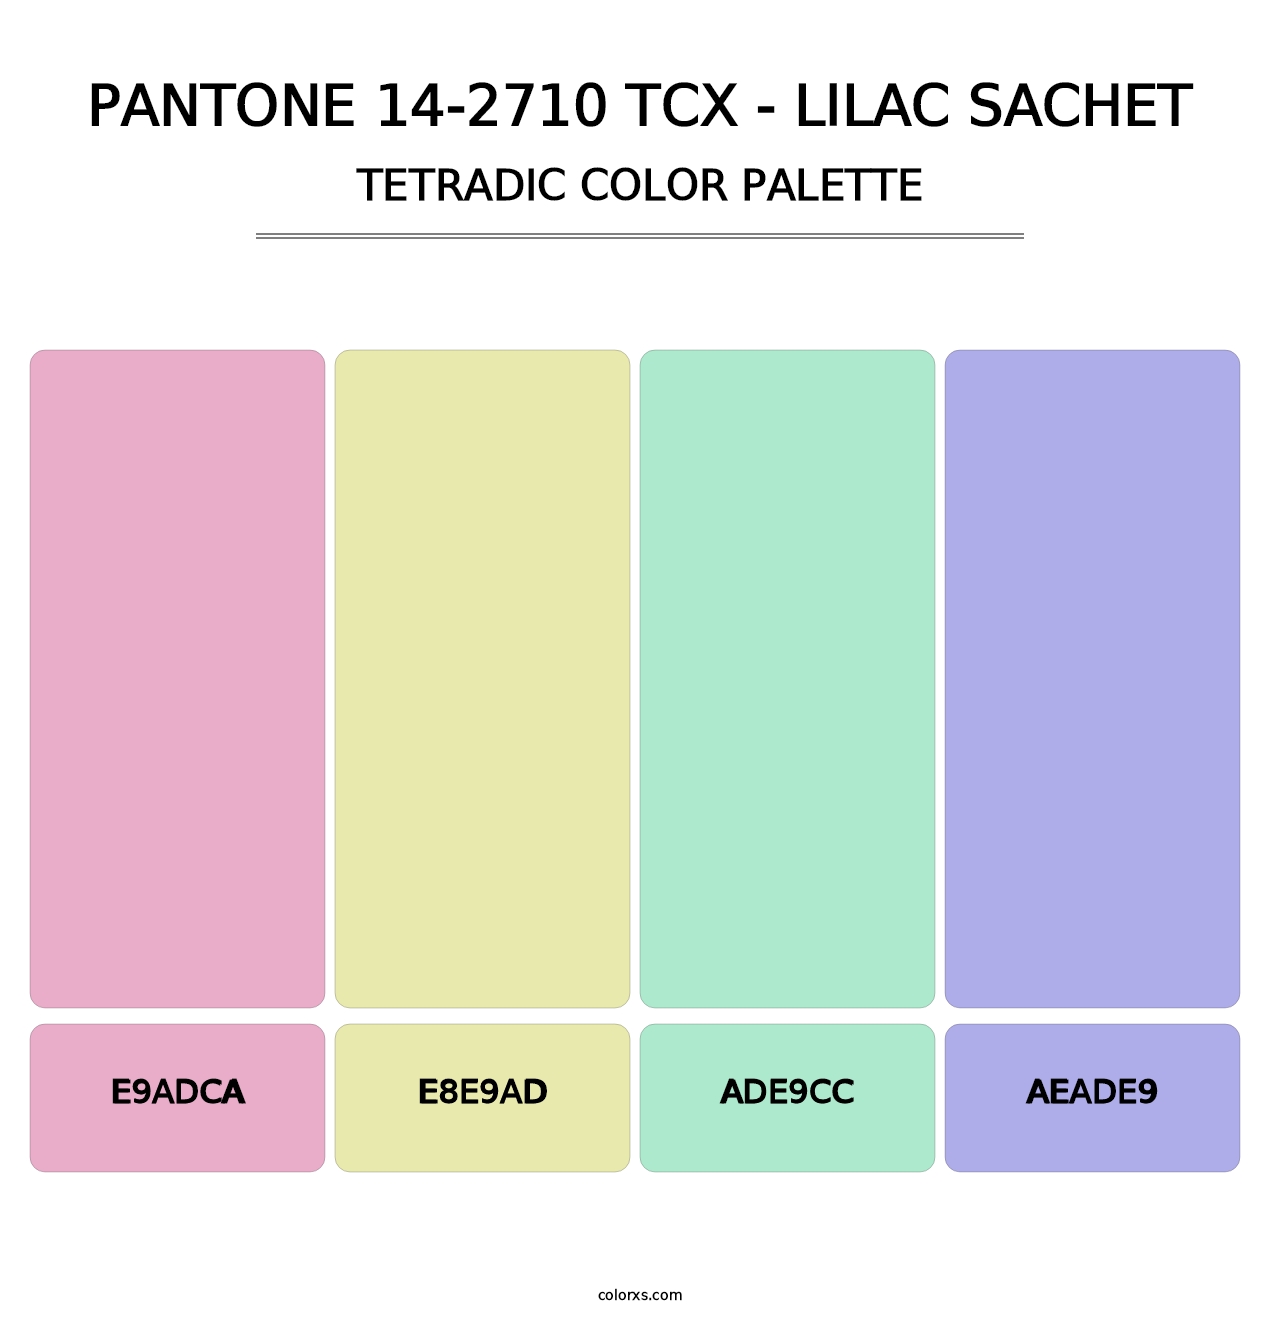 PANTONE 14-2710 TCX - Lilac Sachet - Tetradic Color Palette